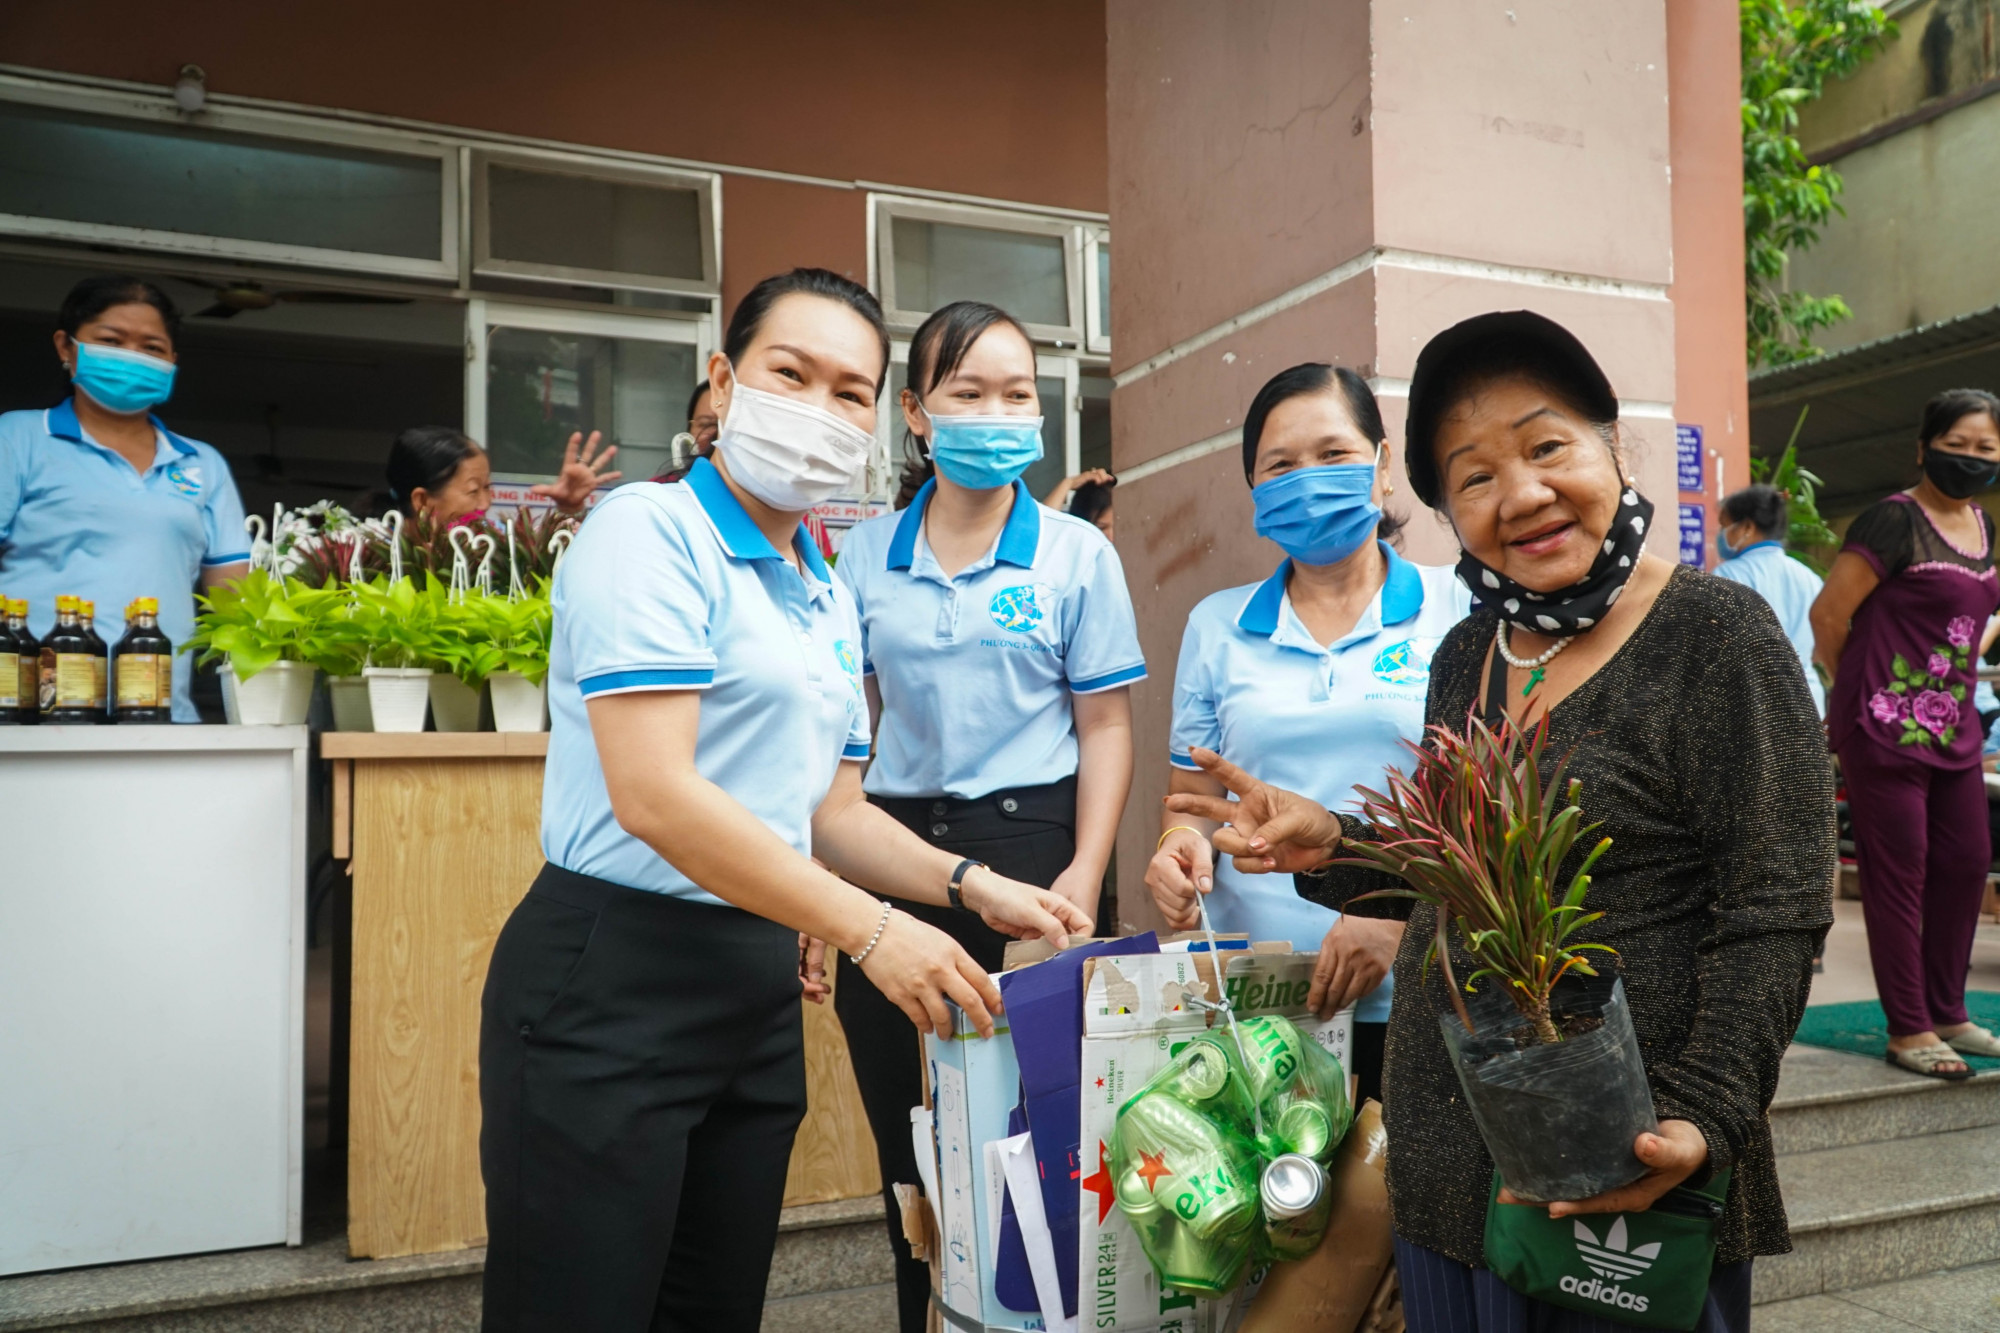 phát động các chi hội ra quân tổng vệ sinh môi trường tại 7 khu phố, thực hiện chương trình đổi rác thải nhựa nhận quà (gồm 40 chậu cây trầu bà, mười giờ, đường, dầu bột ngọt...).